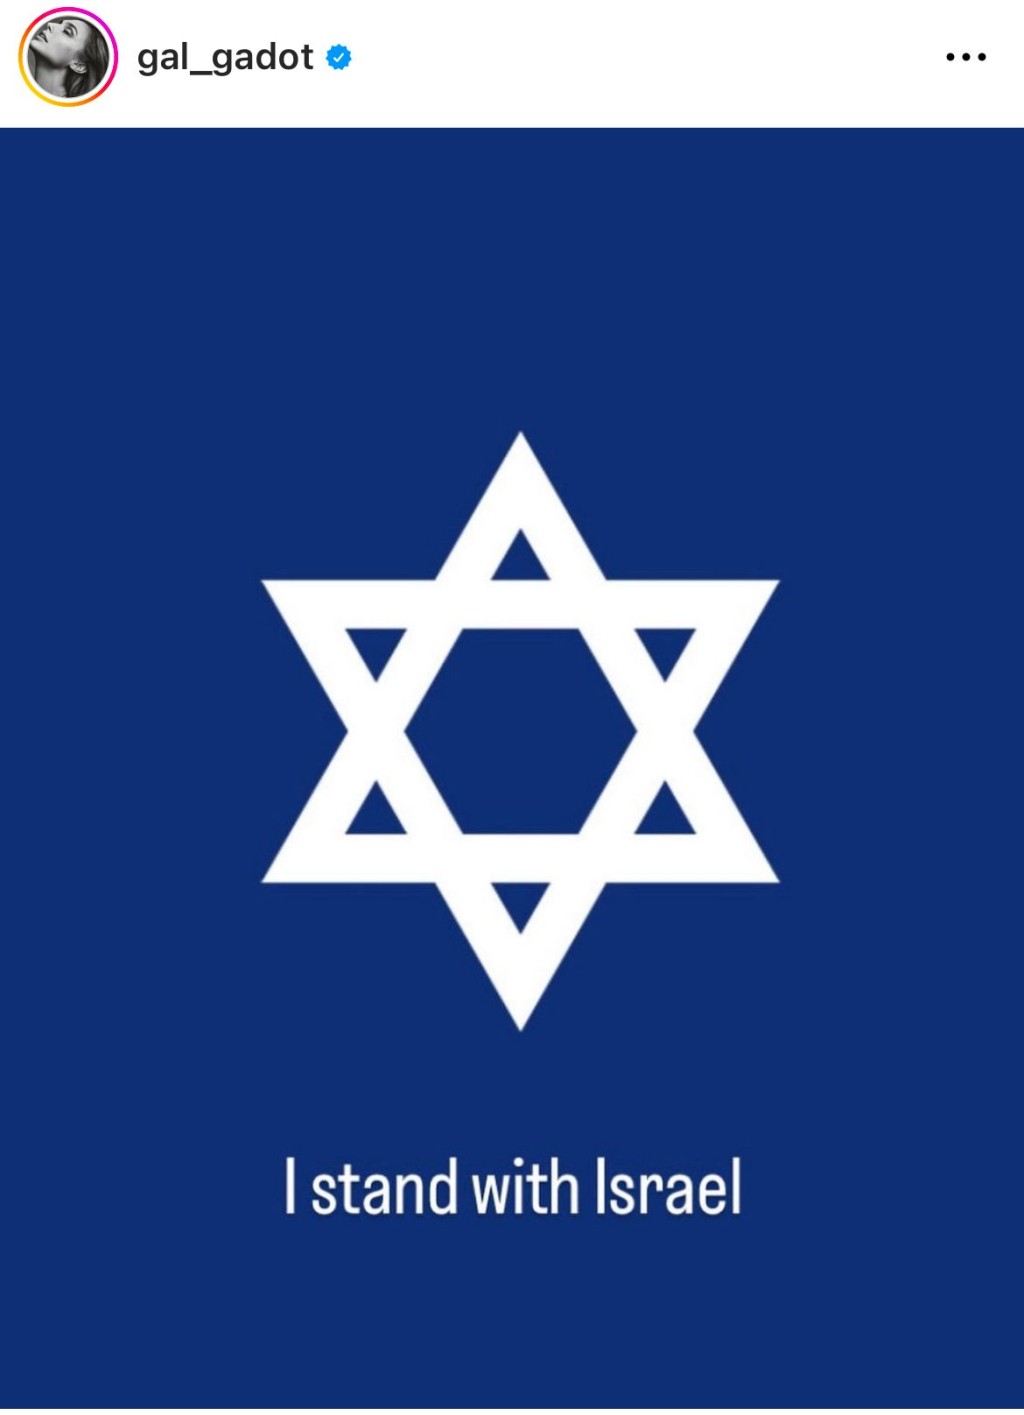 姬嘉铎发大卫星图表态支持以色列。Instagram